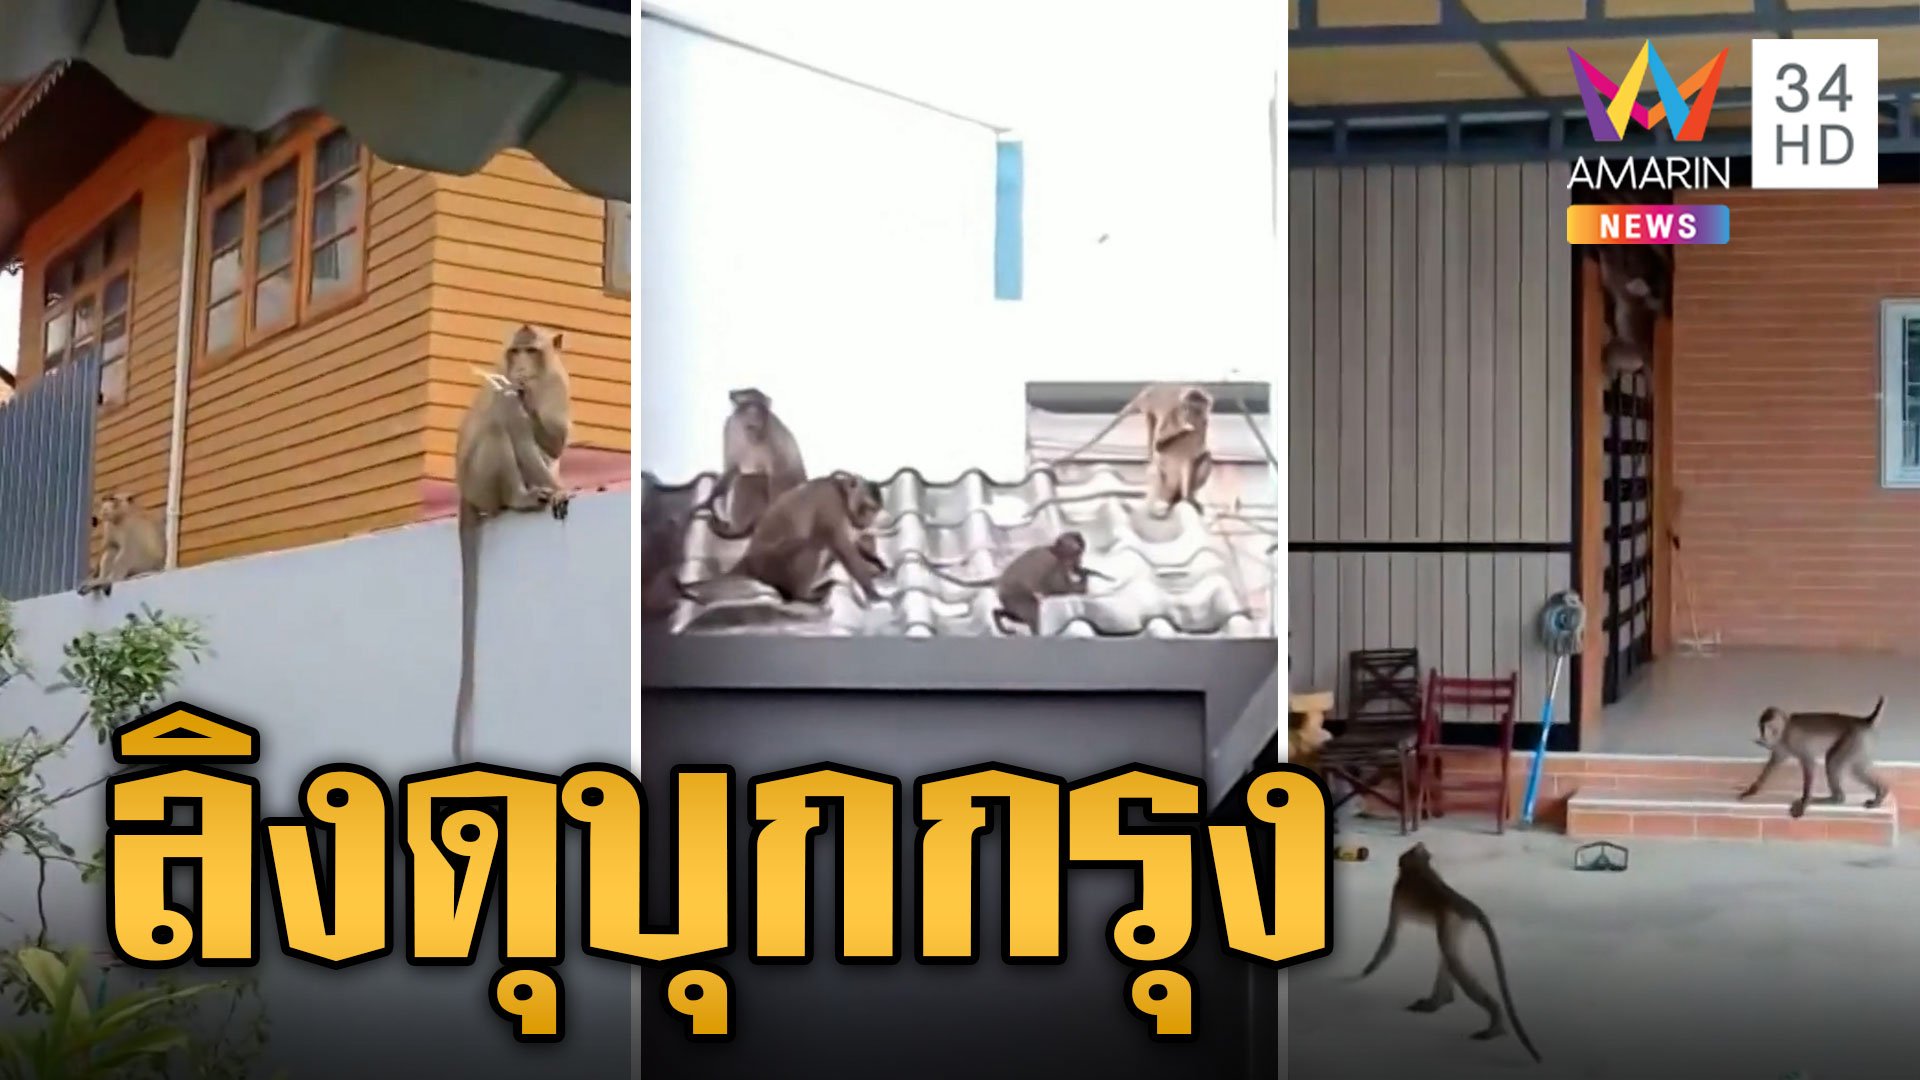 ลิงแสมบุกกรุง มาเป็นฝูงเปิดบ้านรื้อของพังพินาศ | ข่าวอรุณอมรินทร์ | 8 ต.ค. 66 | AMARIN TVHD34